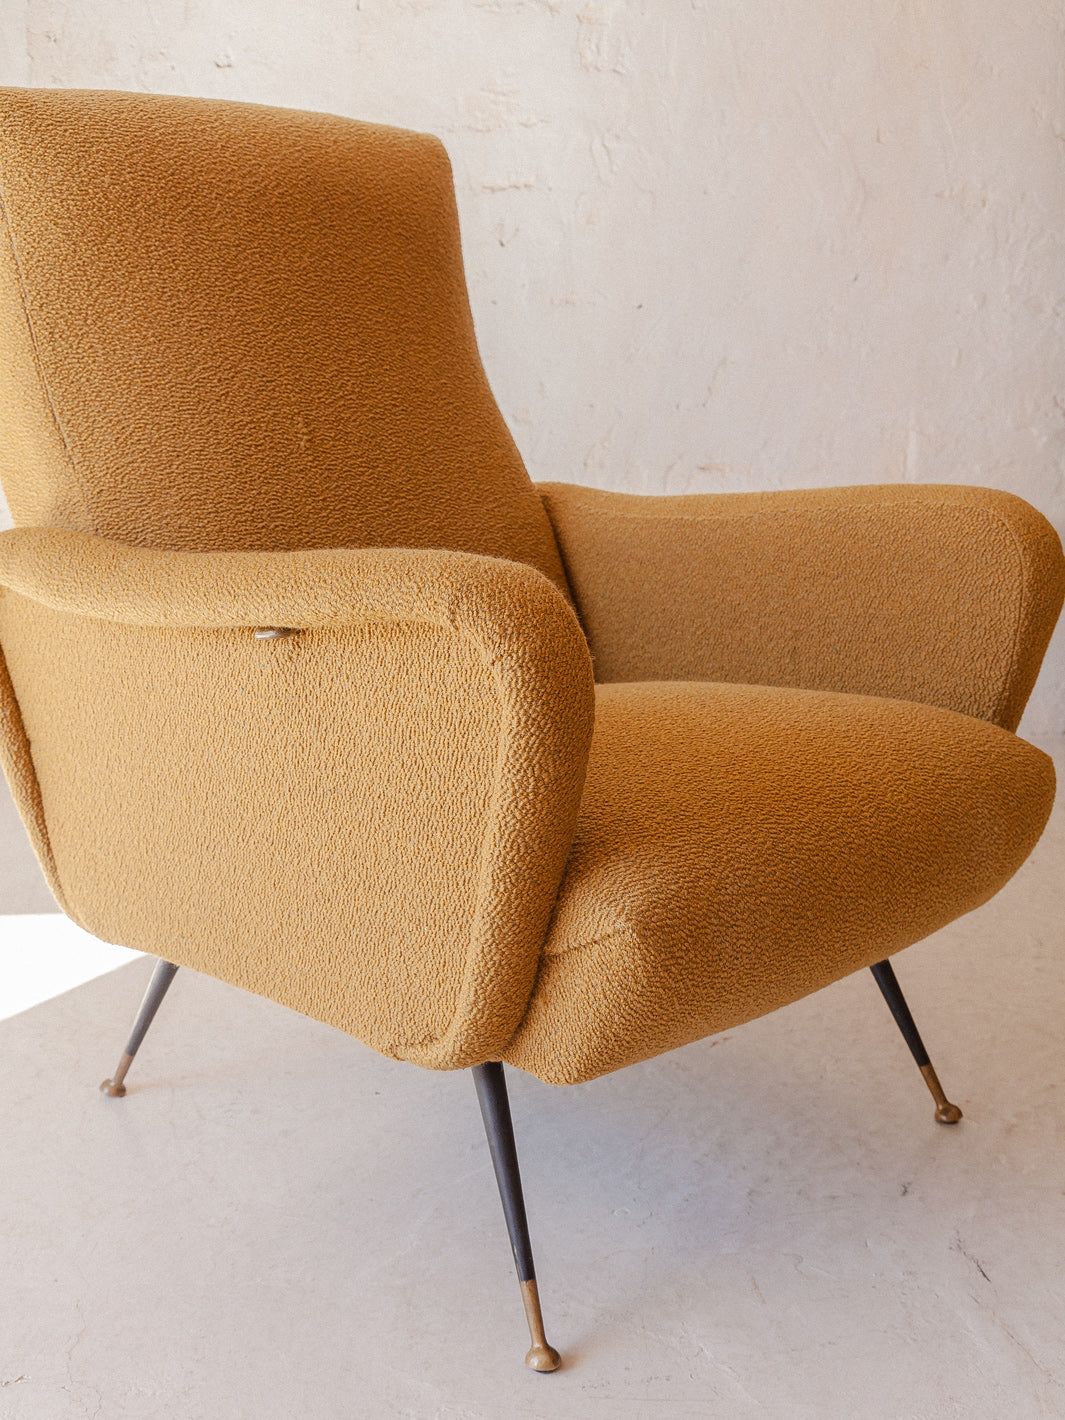 Italian armchair from the 50s mustard